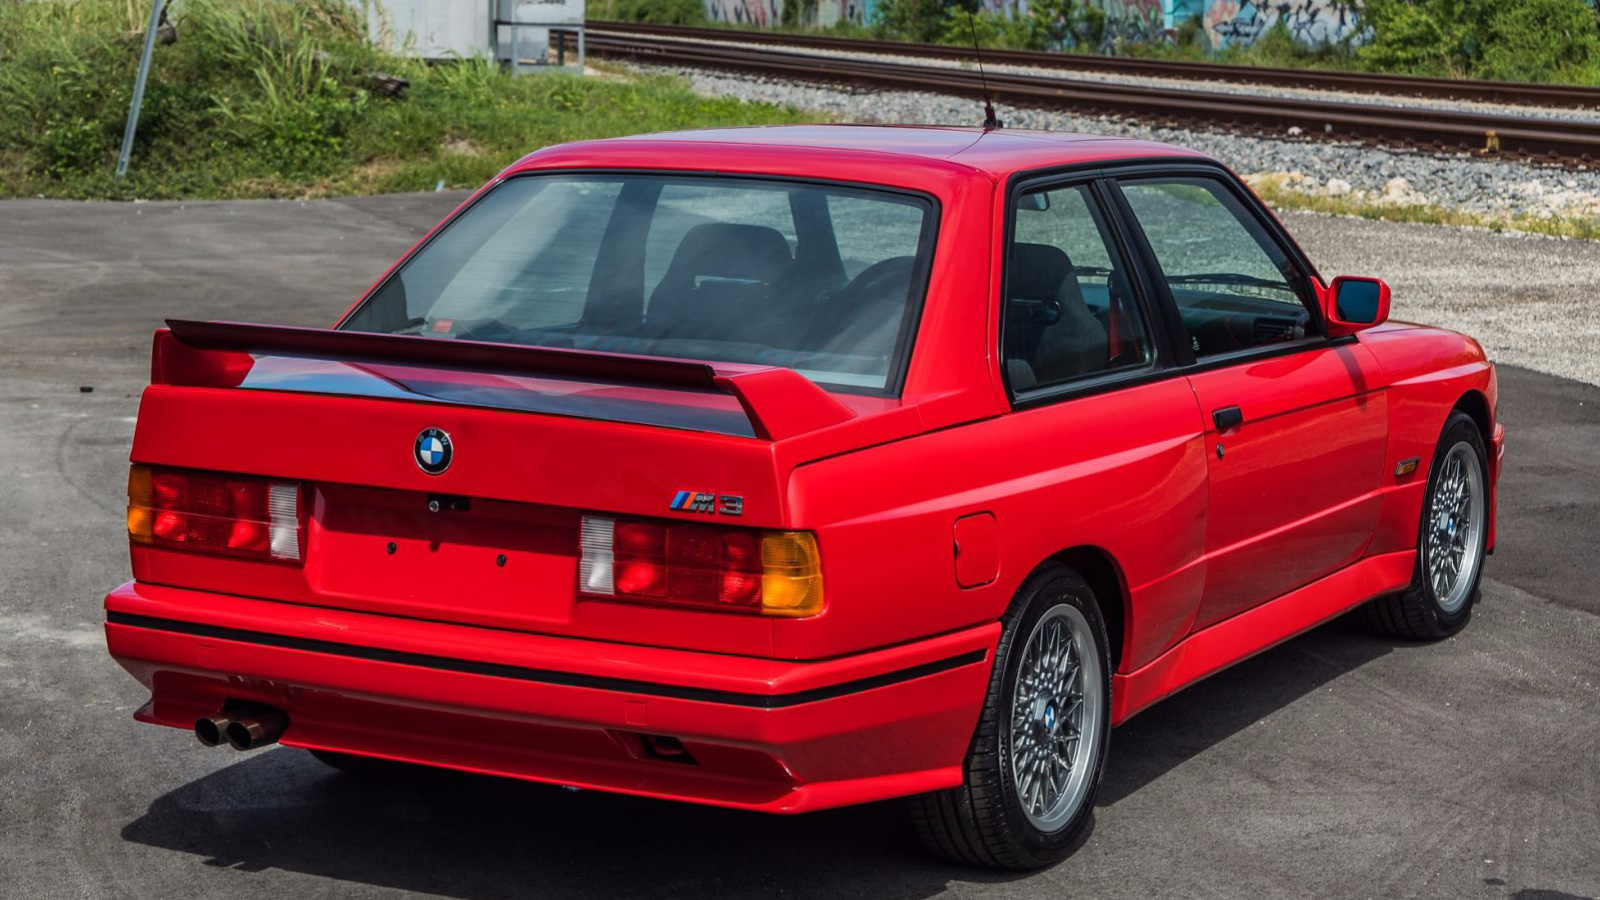 Γιατί είχε τόσο ακραία τιμή αυτή BMW M3 E30 Sport Evo;